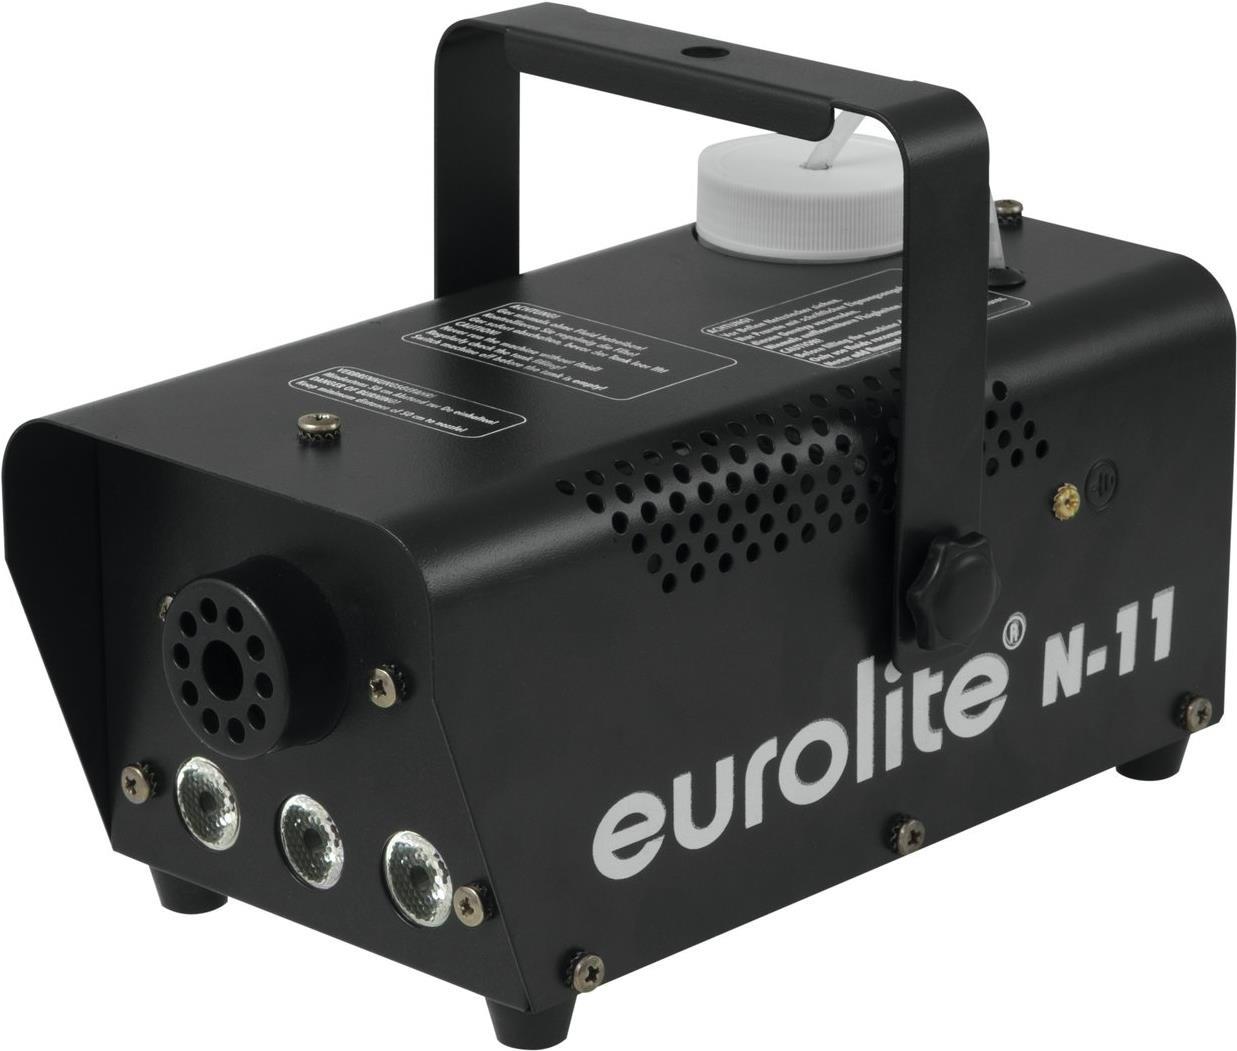 EUROLITE Nebelmaschine Eurolite N-11 LED HYBRID AM inkl. Befestigungsbügel, inkl. Kabelfernbedienung